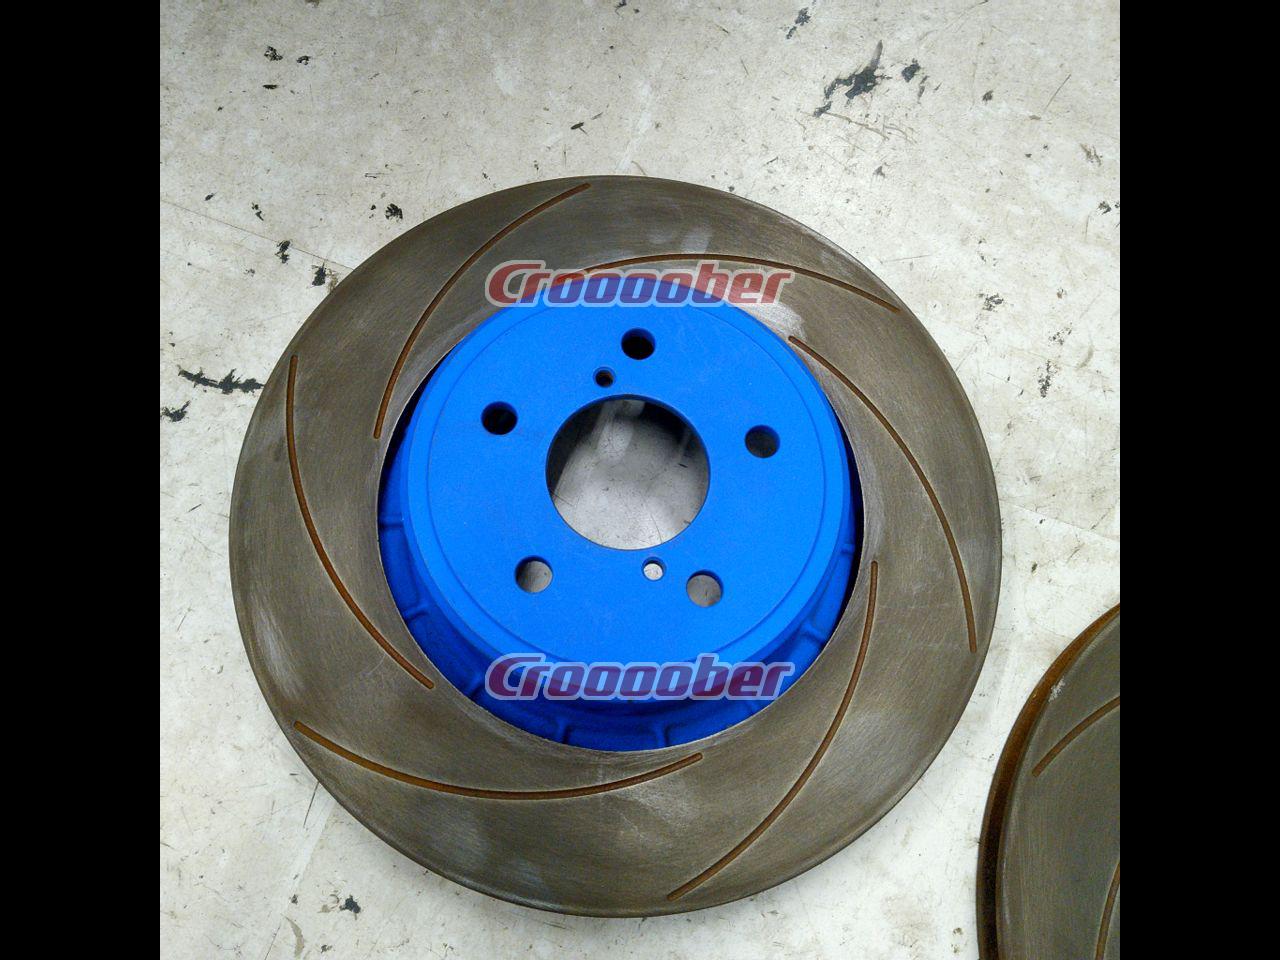 car disc brake dimensions